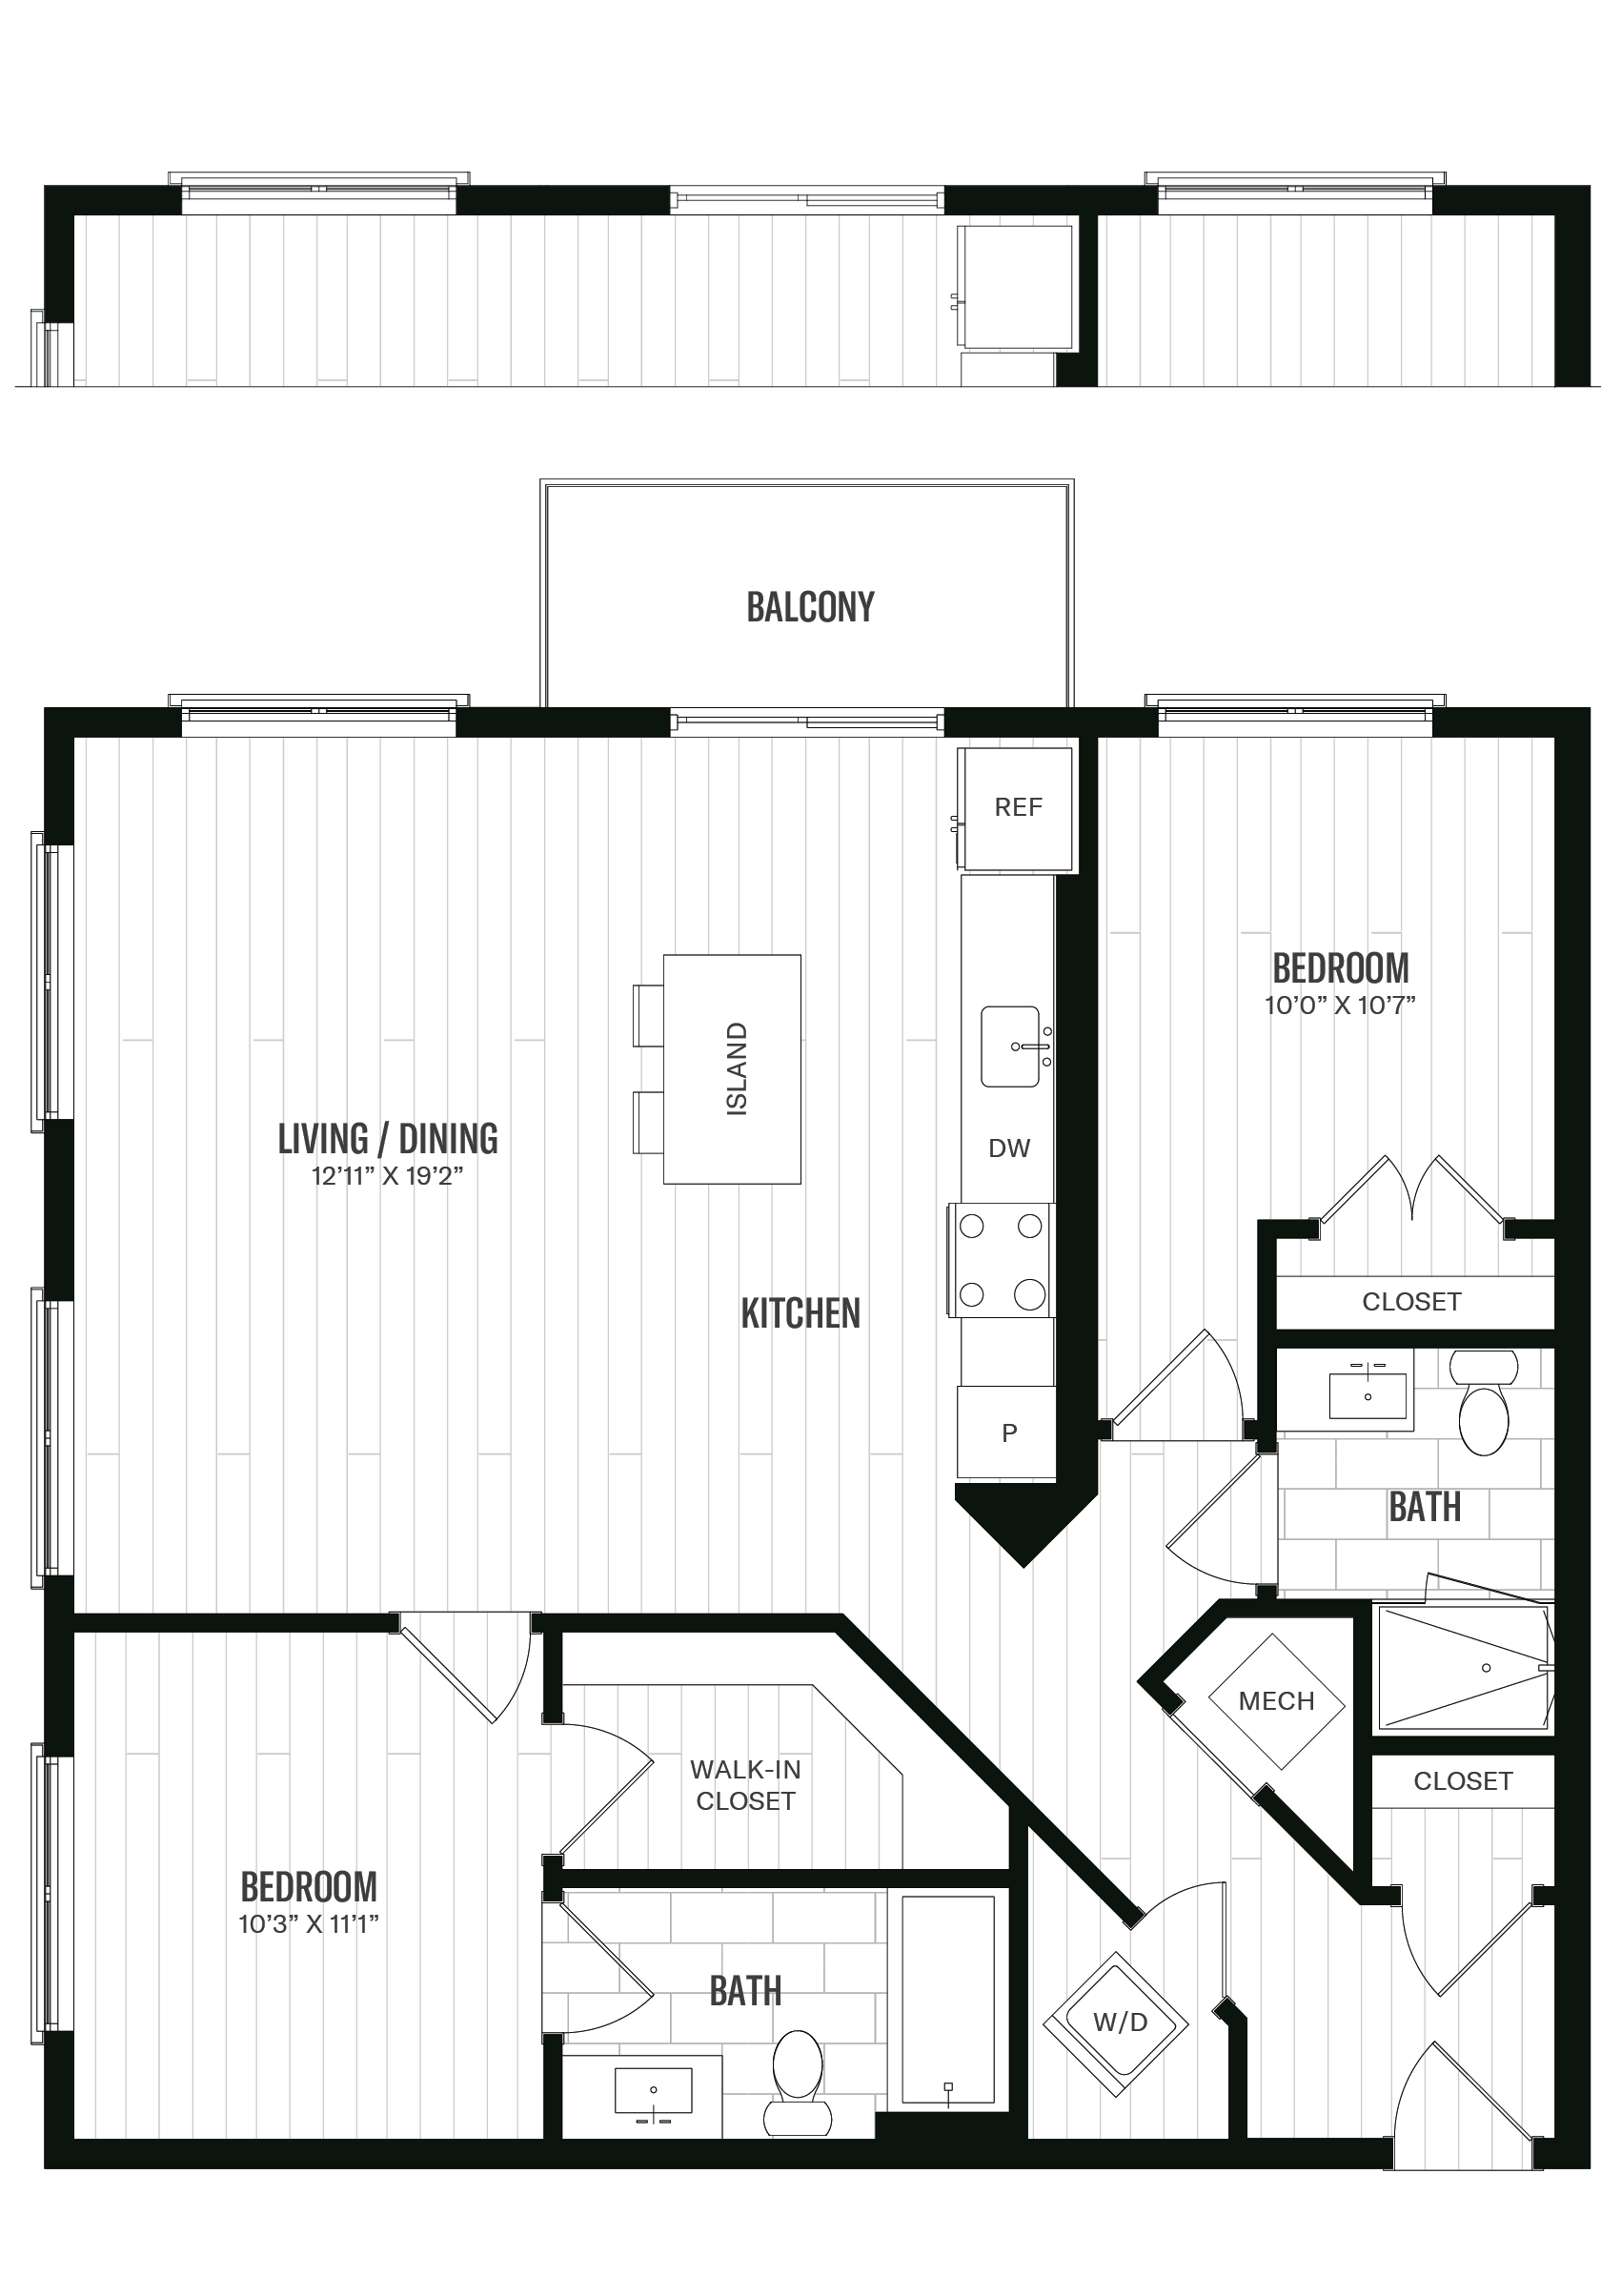 Floorplan image of unit 336